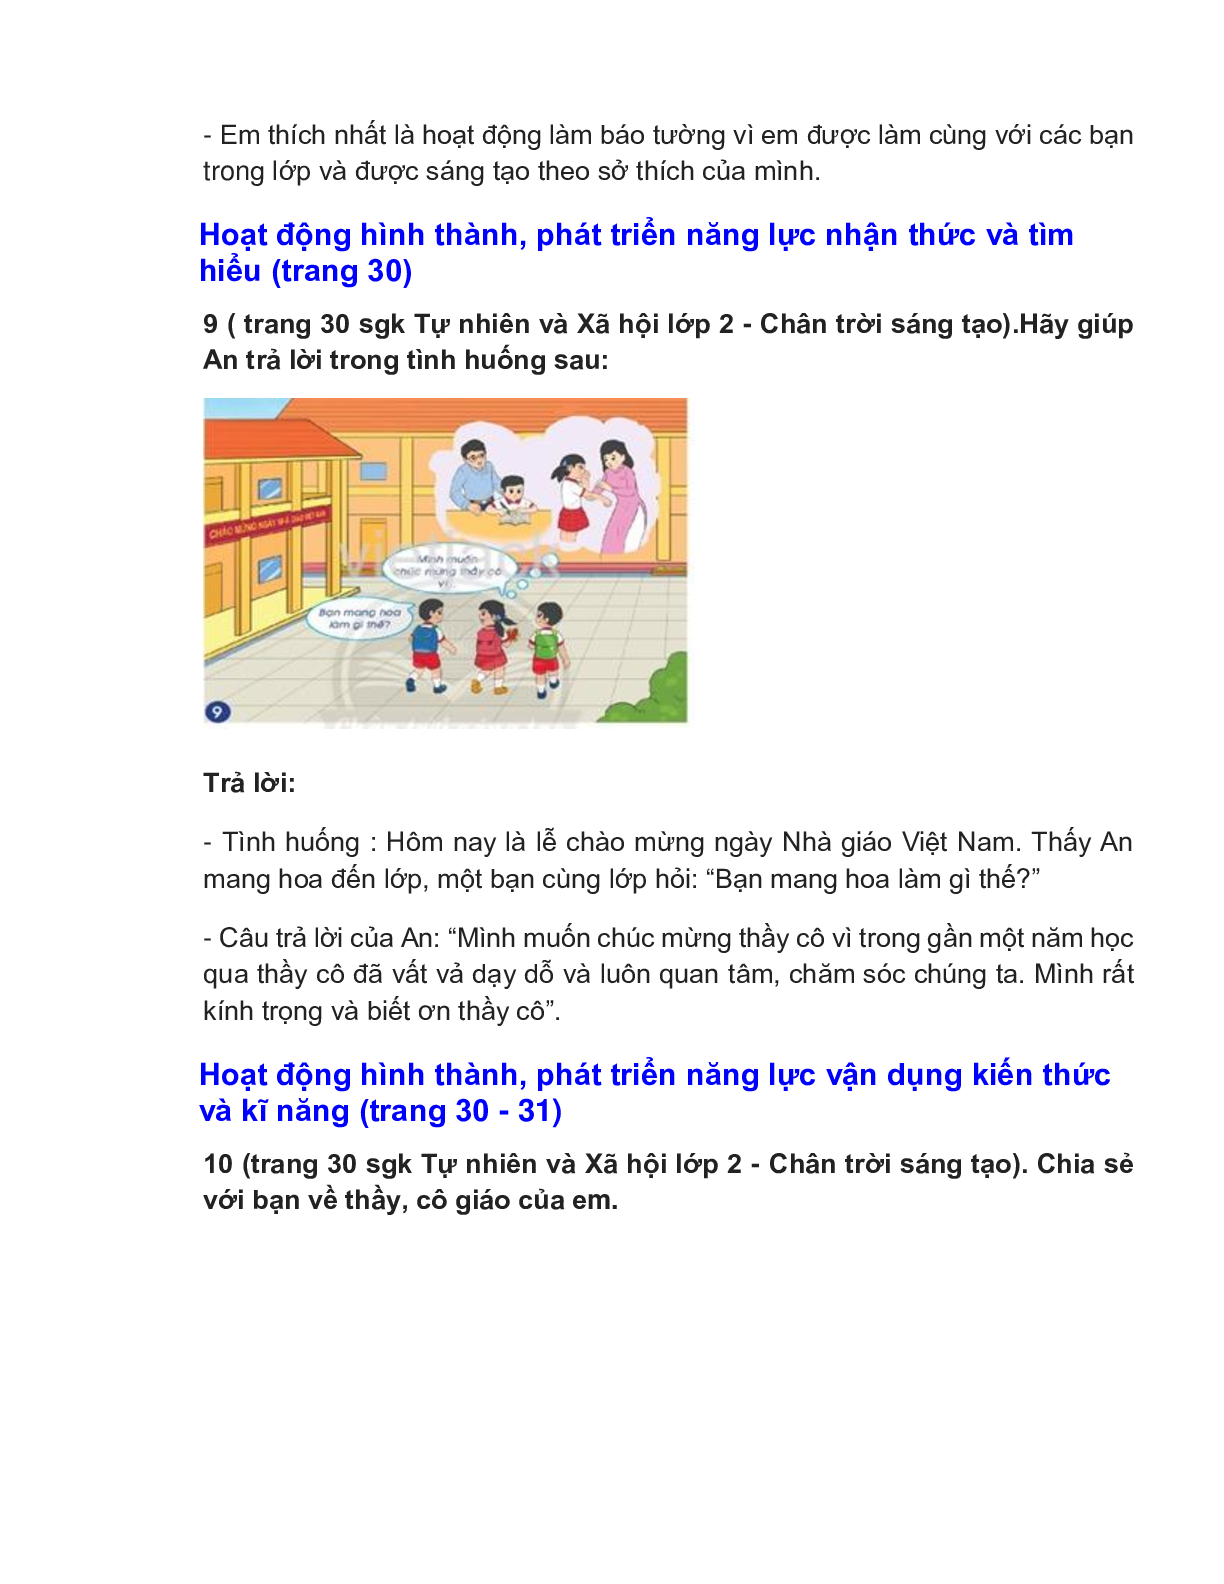 Giải SGK Tự nhiên và Xã hội lớp 2 trang 28, 29, 30, 31 Bài 7: Ngày nhà giáo Việt Nam – Chân trời sáng tạo (trang 5)